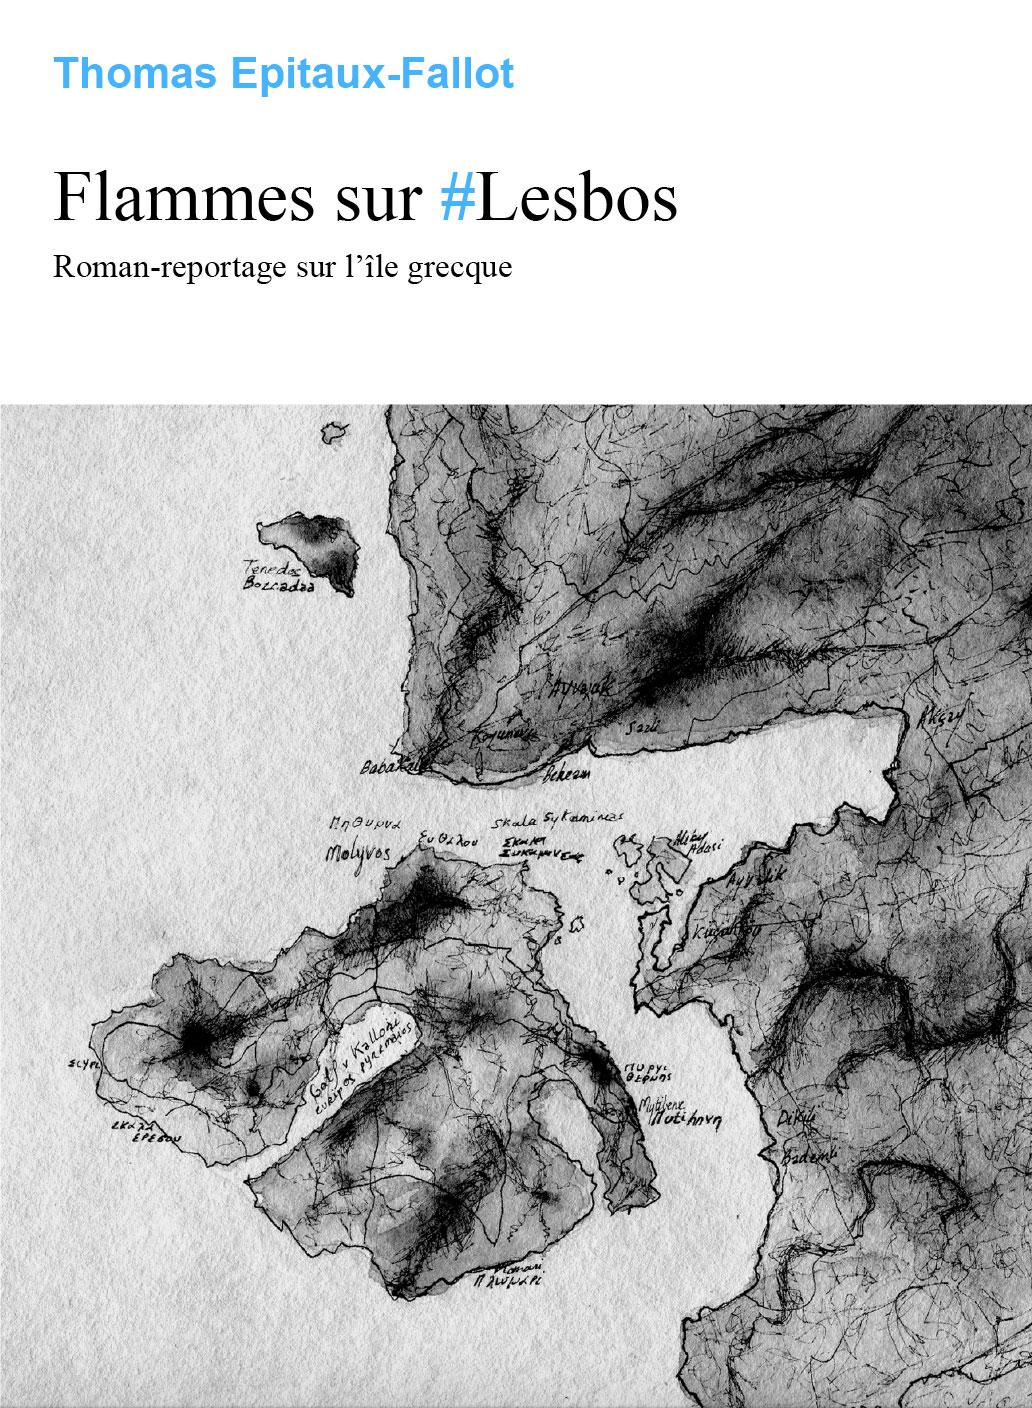 Couverture du livre "Flammes sur #Lesbos" de Thomas Epitaux-Fallot. [Autoédition]